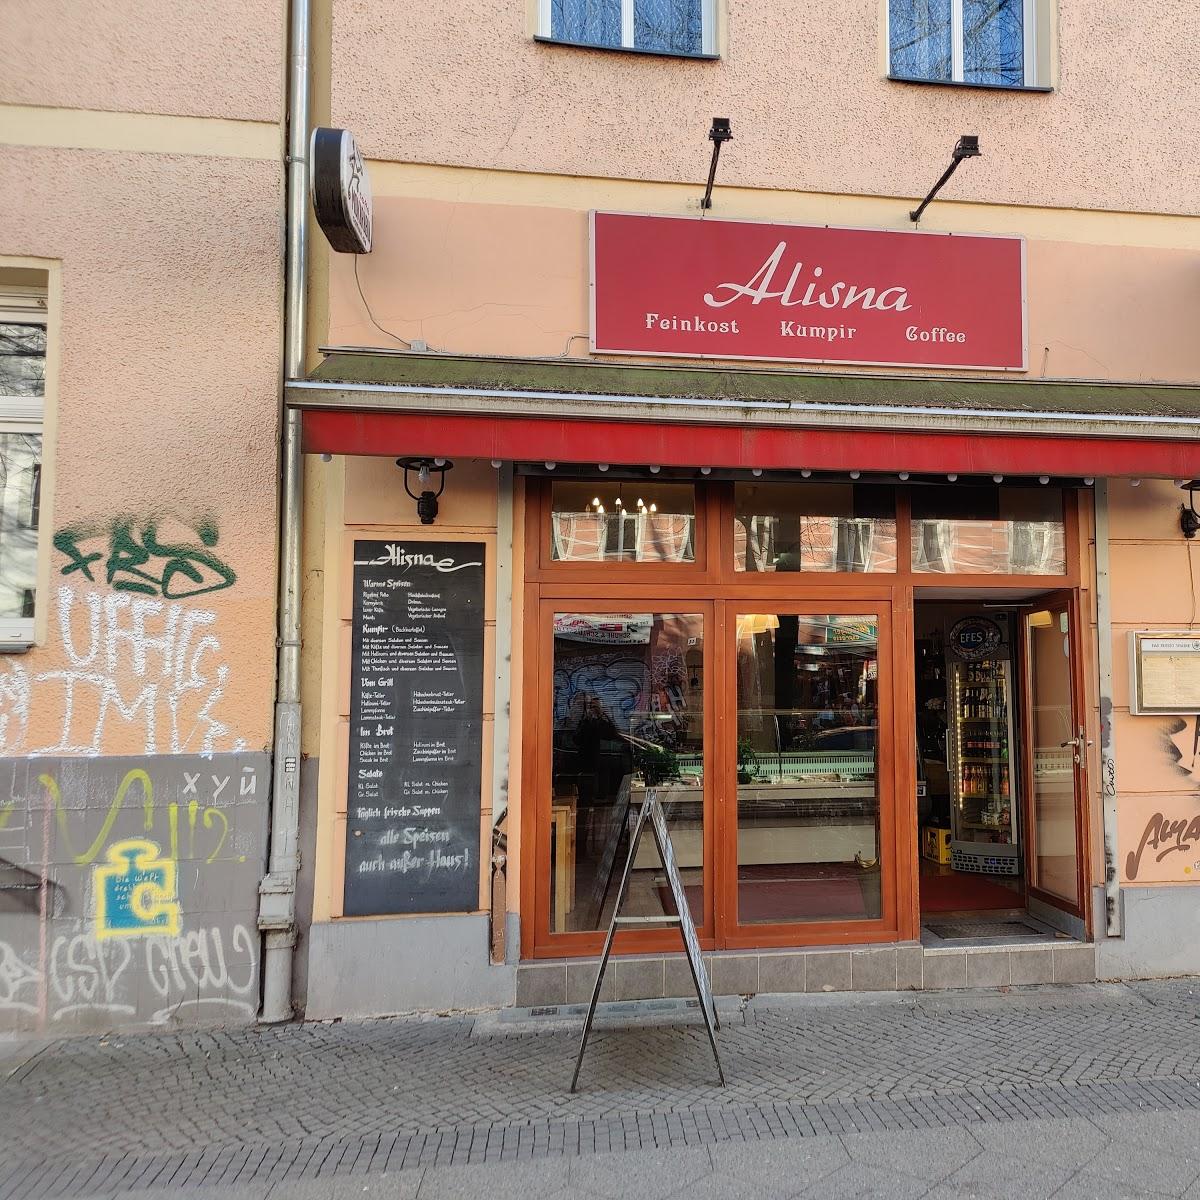 Restaurant "Alisna Kumpir" in Berlin